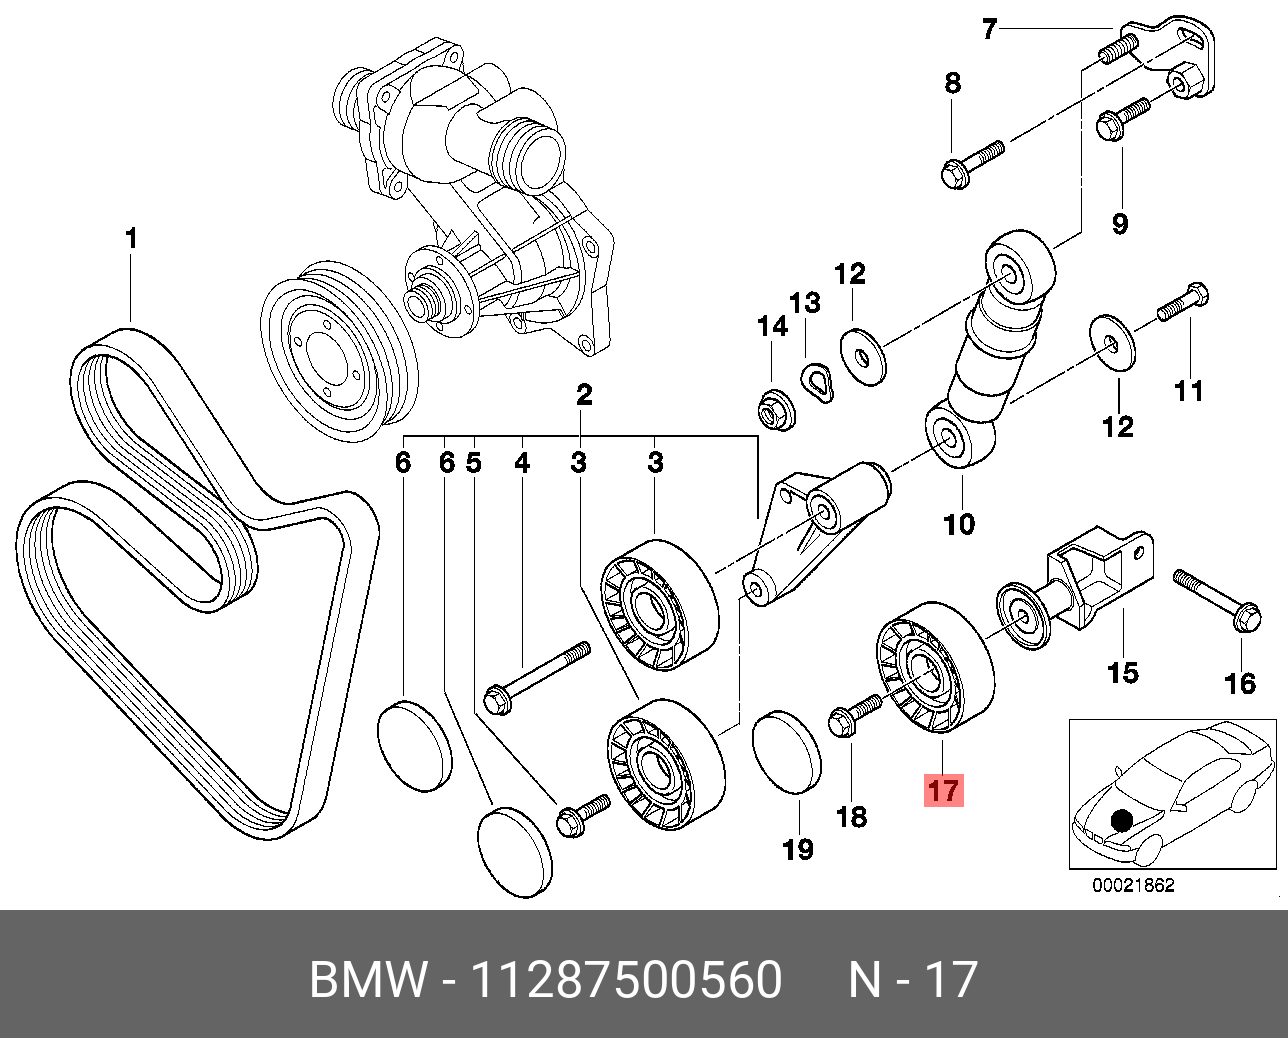 Ролик промежуточный навесного оборудования - BMW 11 28 7 500 560